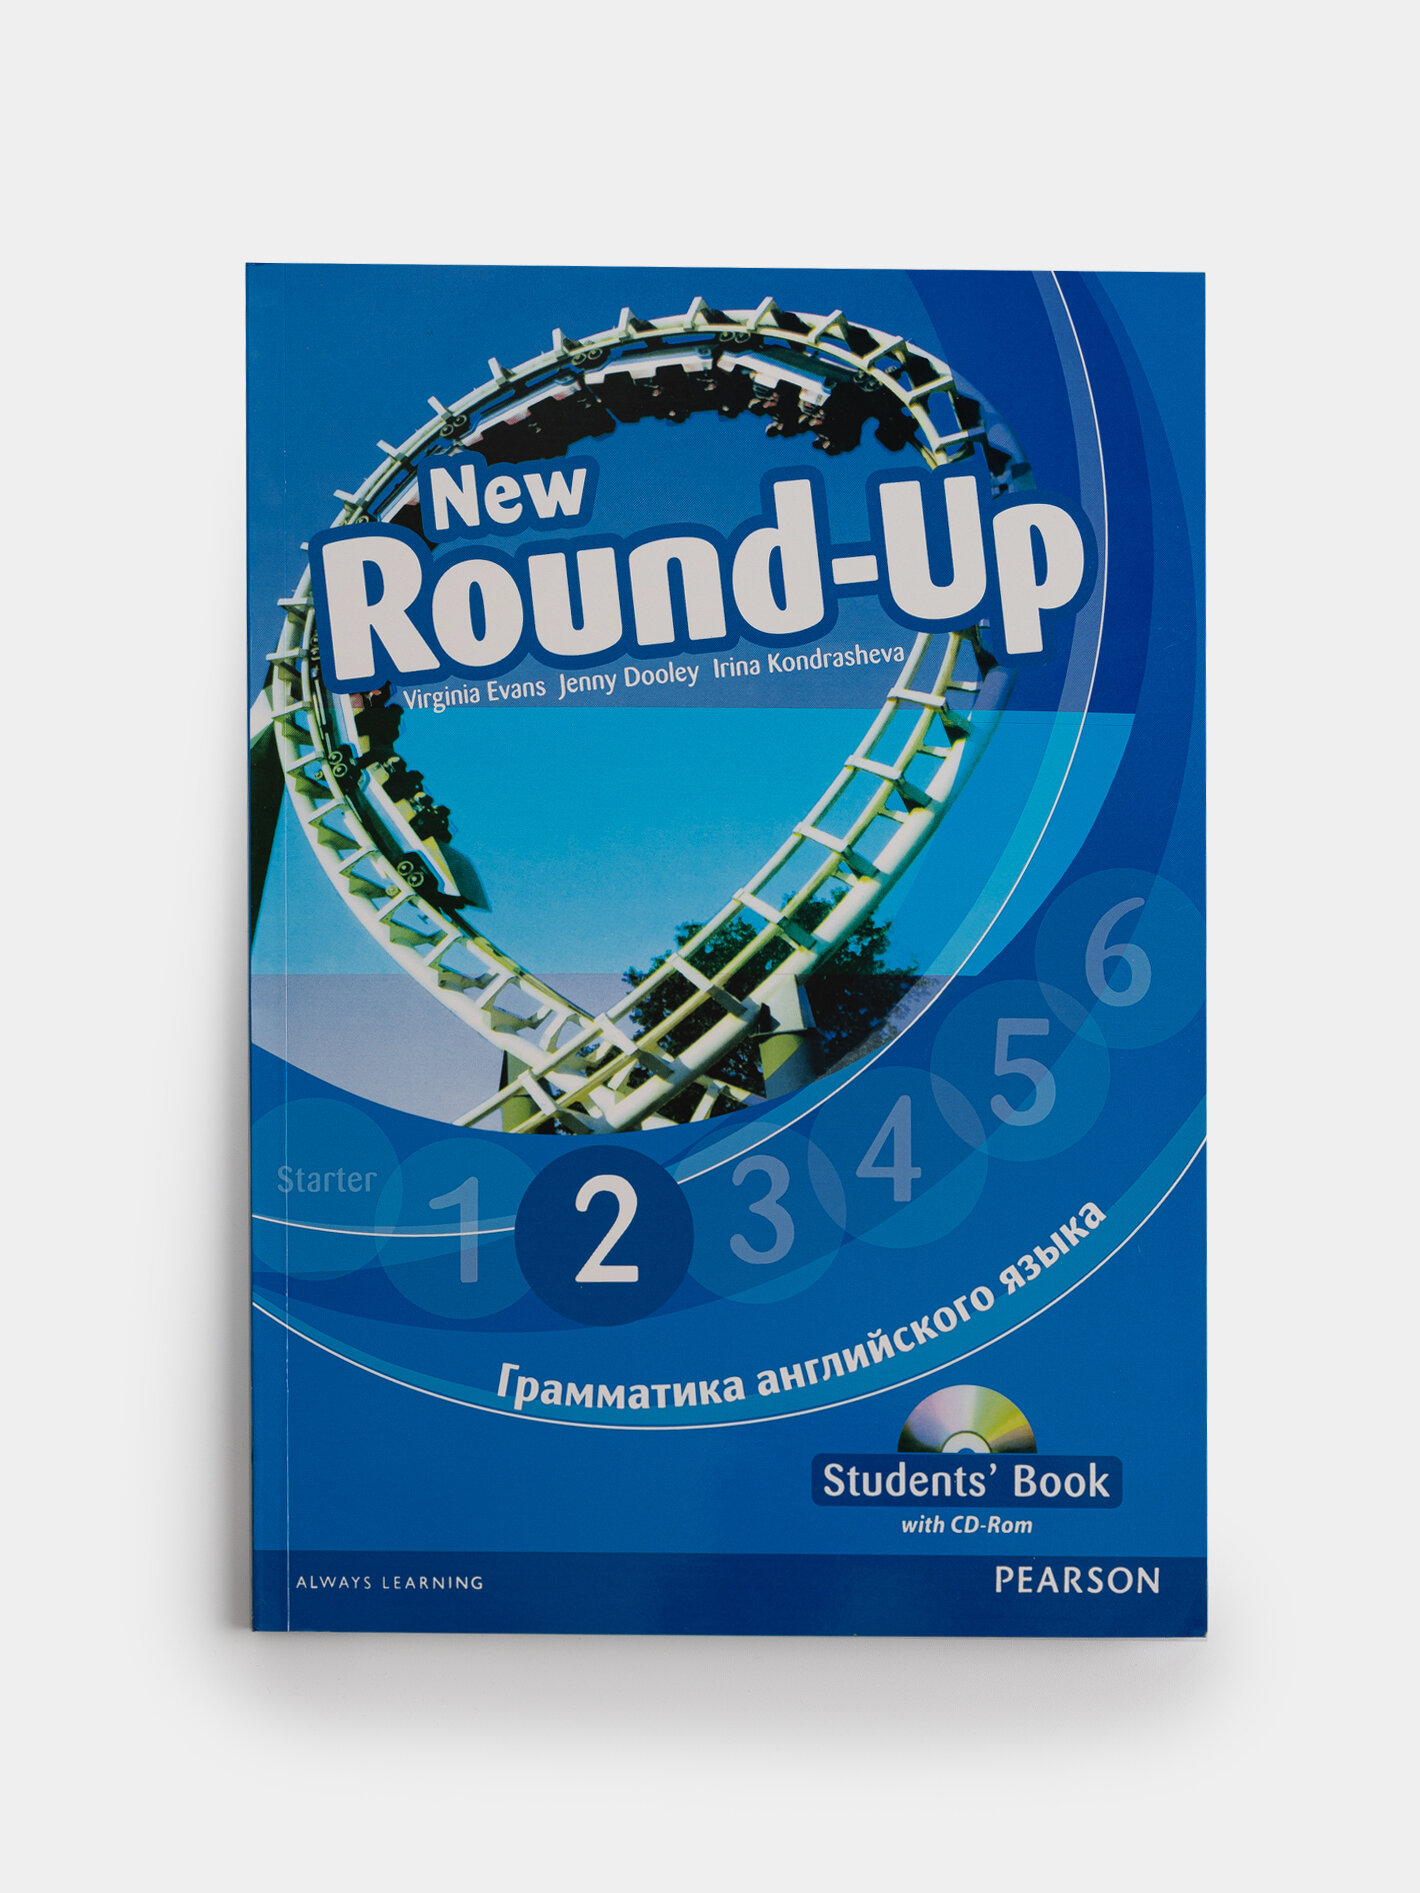 New Round-Up 2 (русская версия) + CD диск - учебник для изучения английского языка на уровне A1